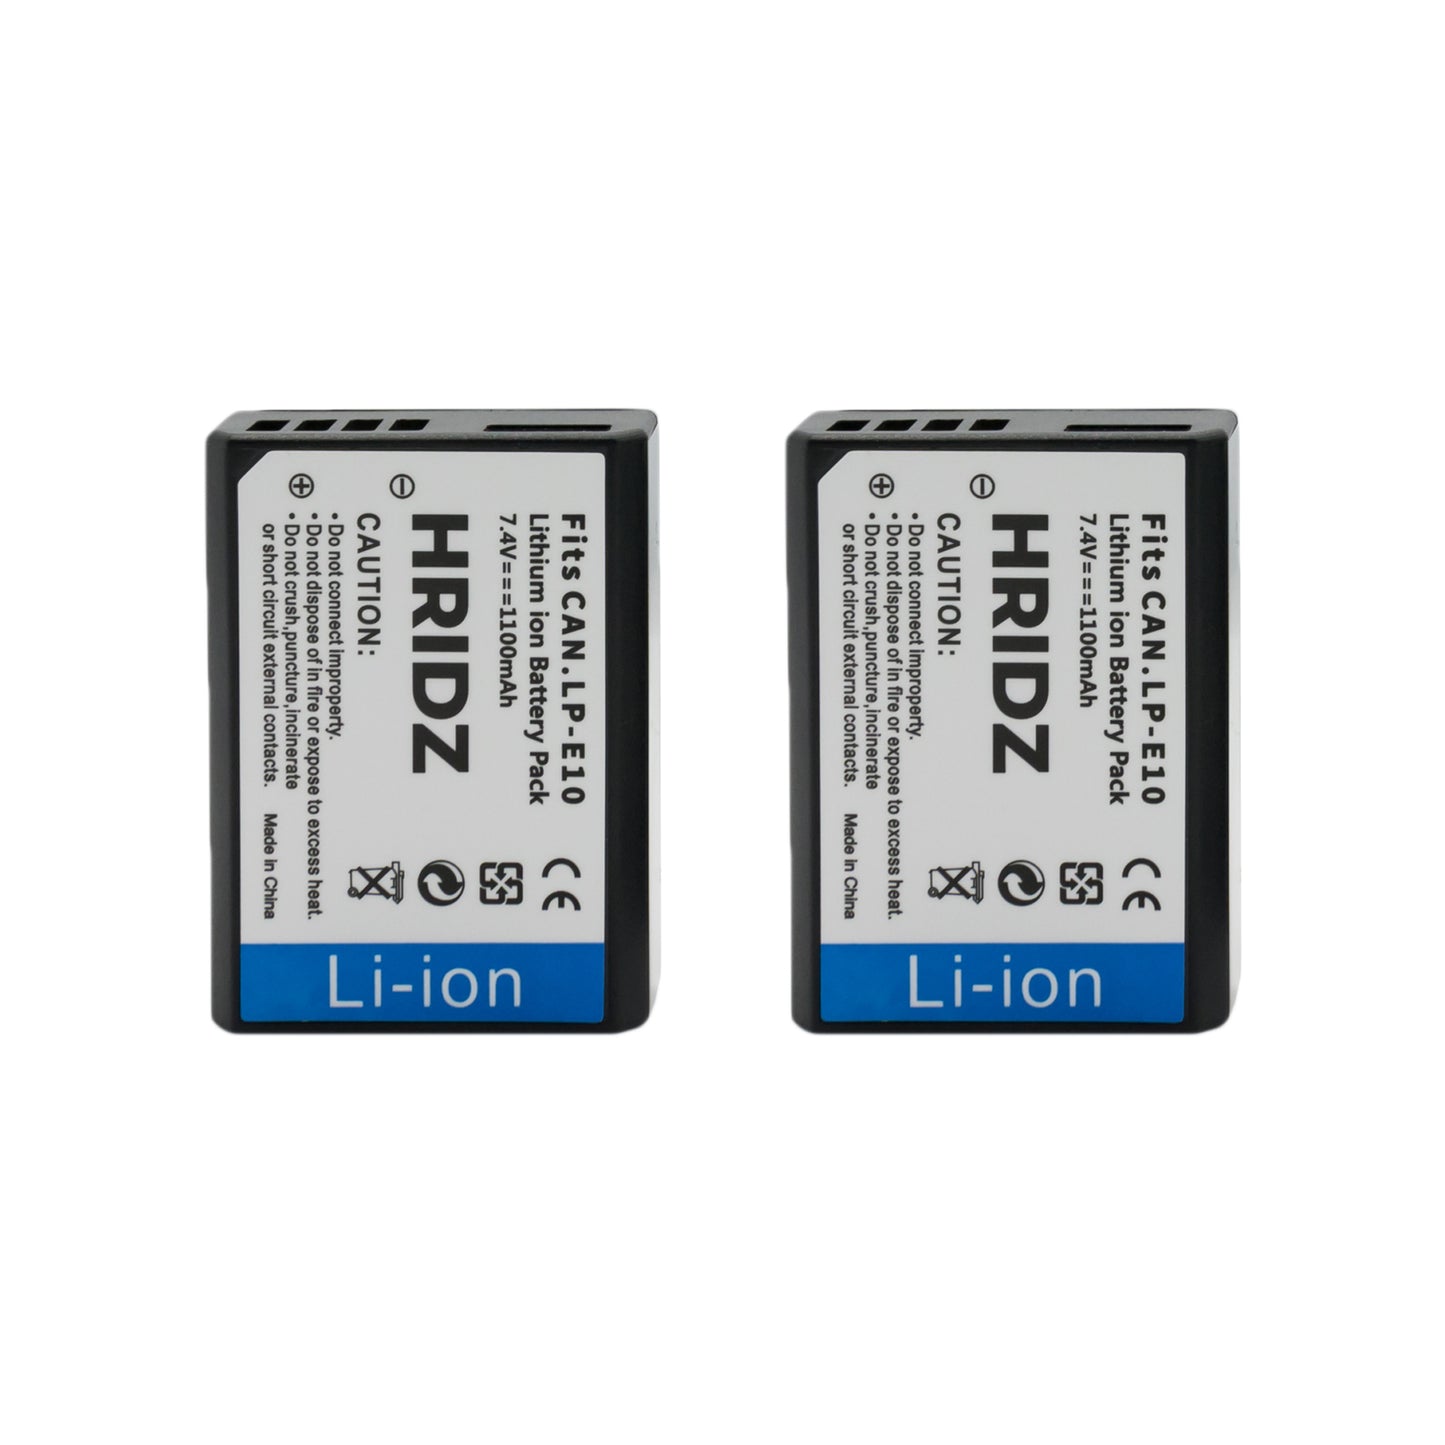 Hridz LP-E10 battery pack for Canon EOS 3000D EOS 1500D EOS 1300D EOS 1200D EOS 1100D